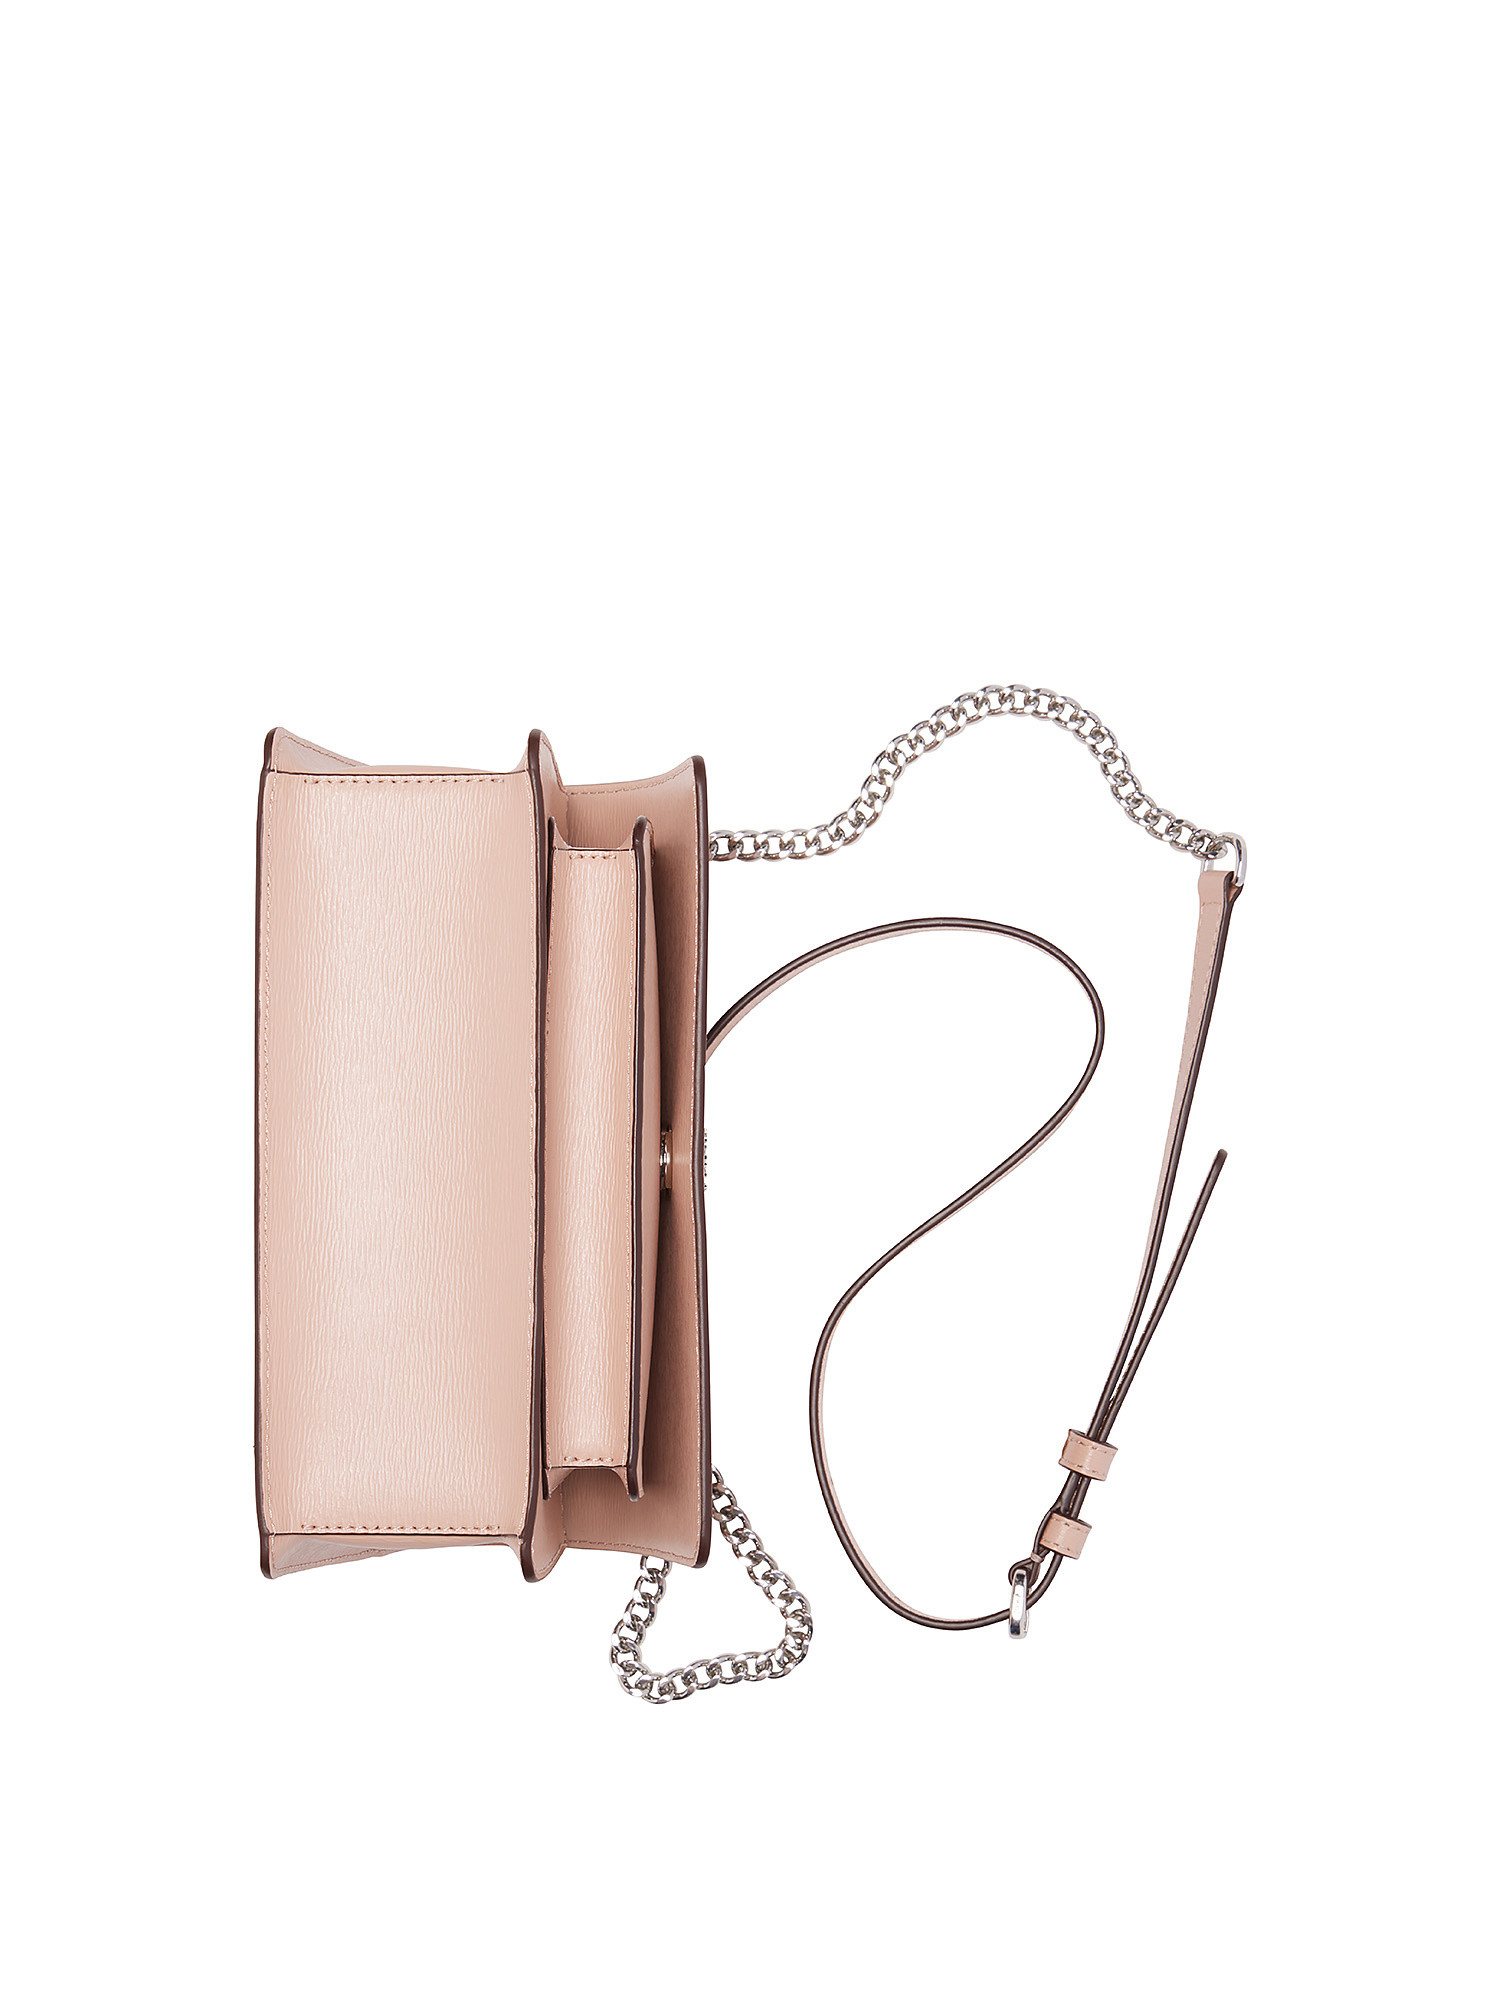 Dkny - Flap shoulder bag with logo, Light Pink, large image number 4